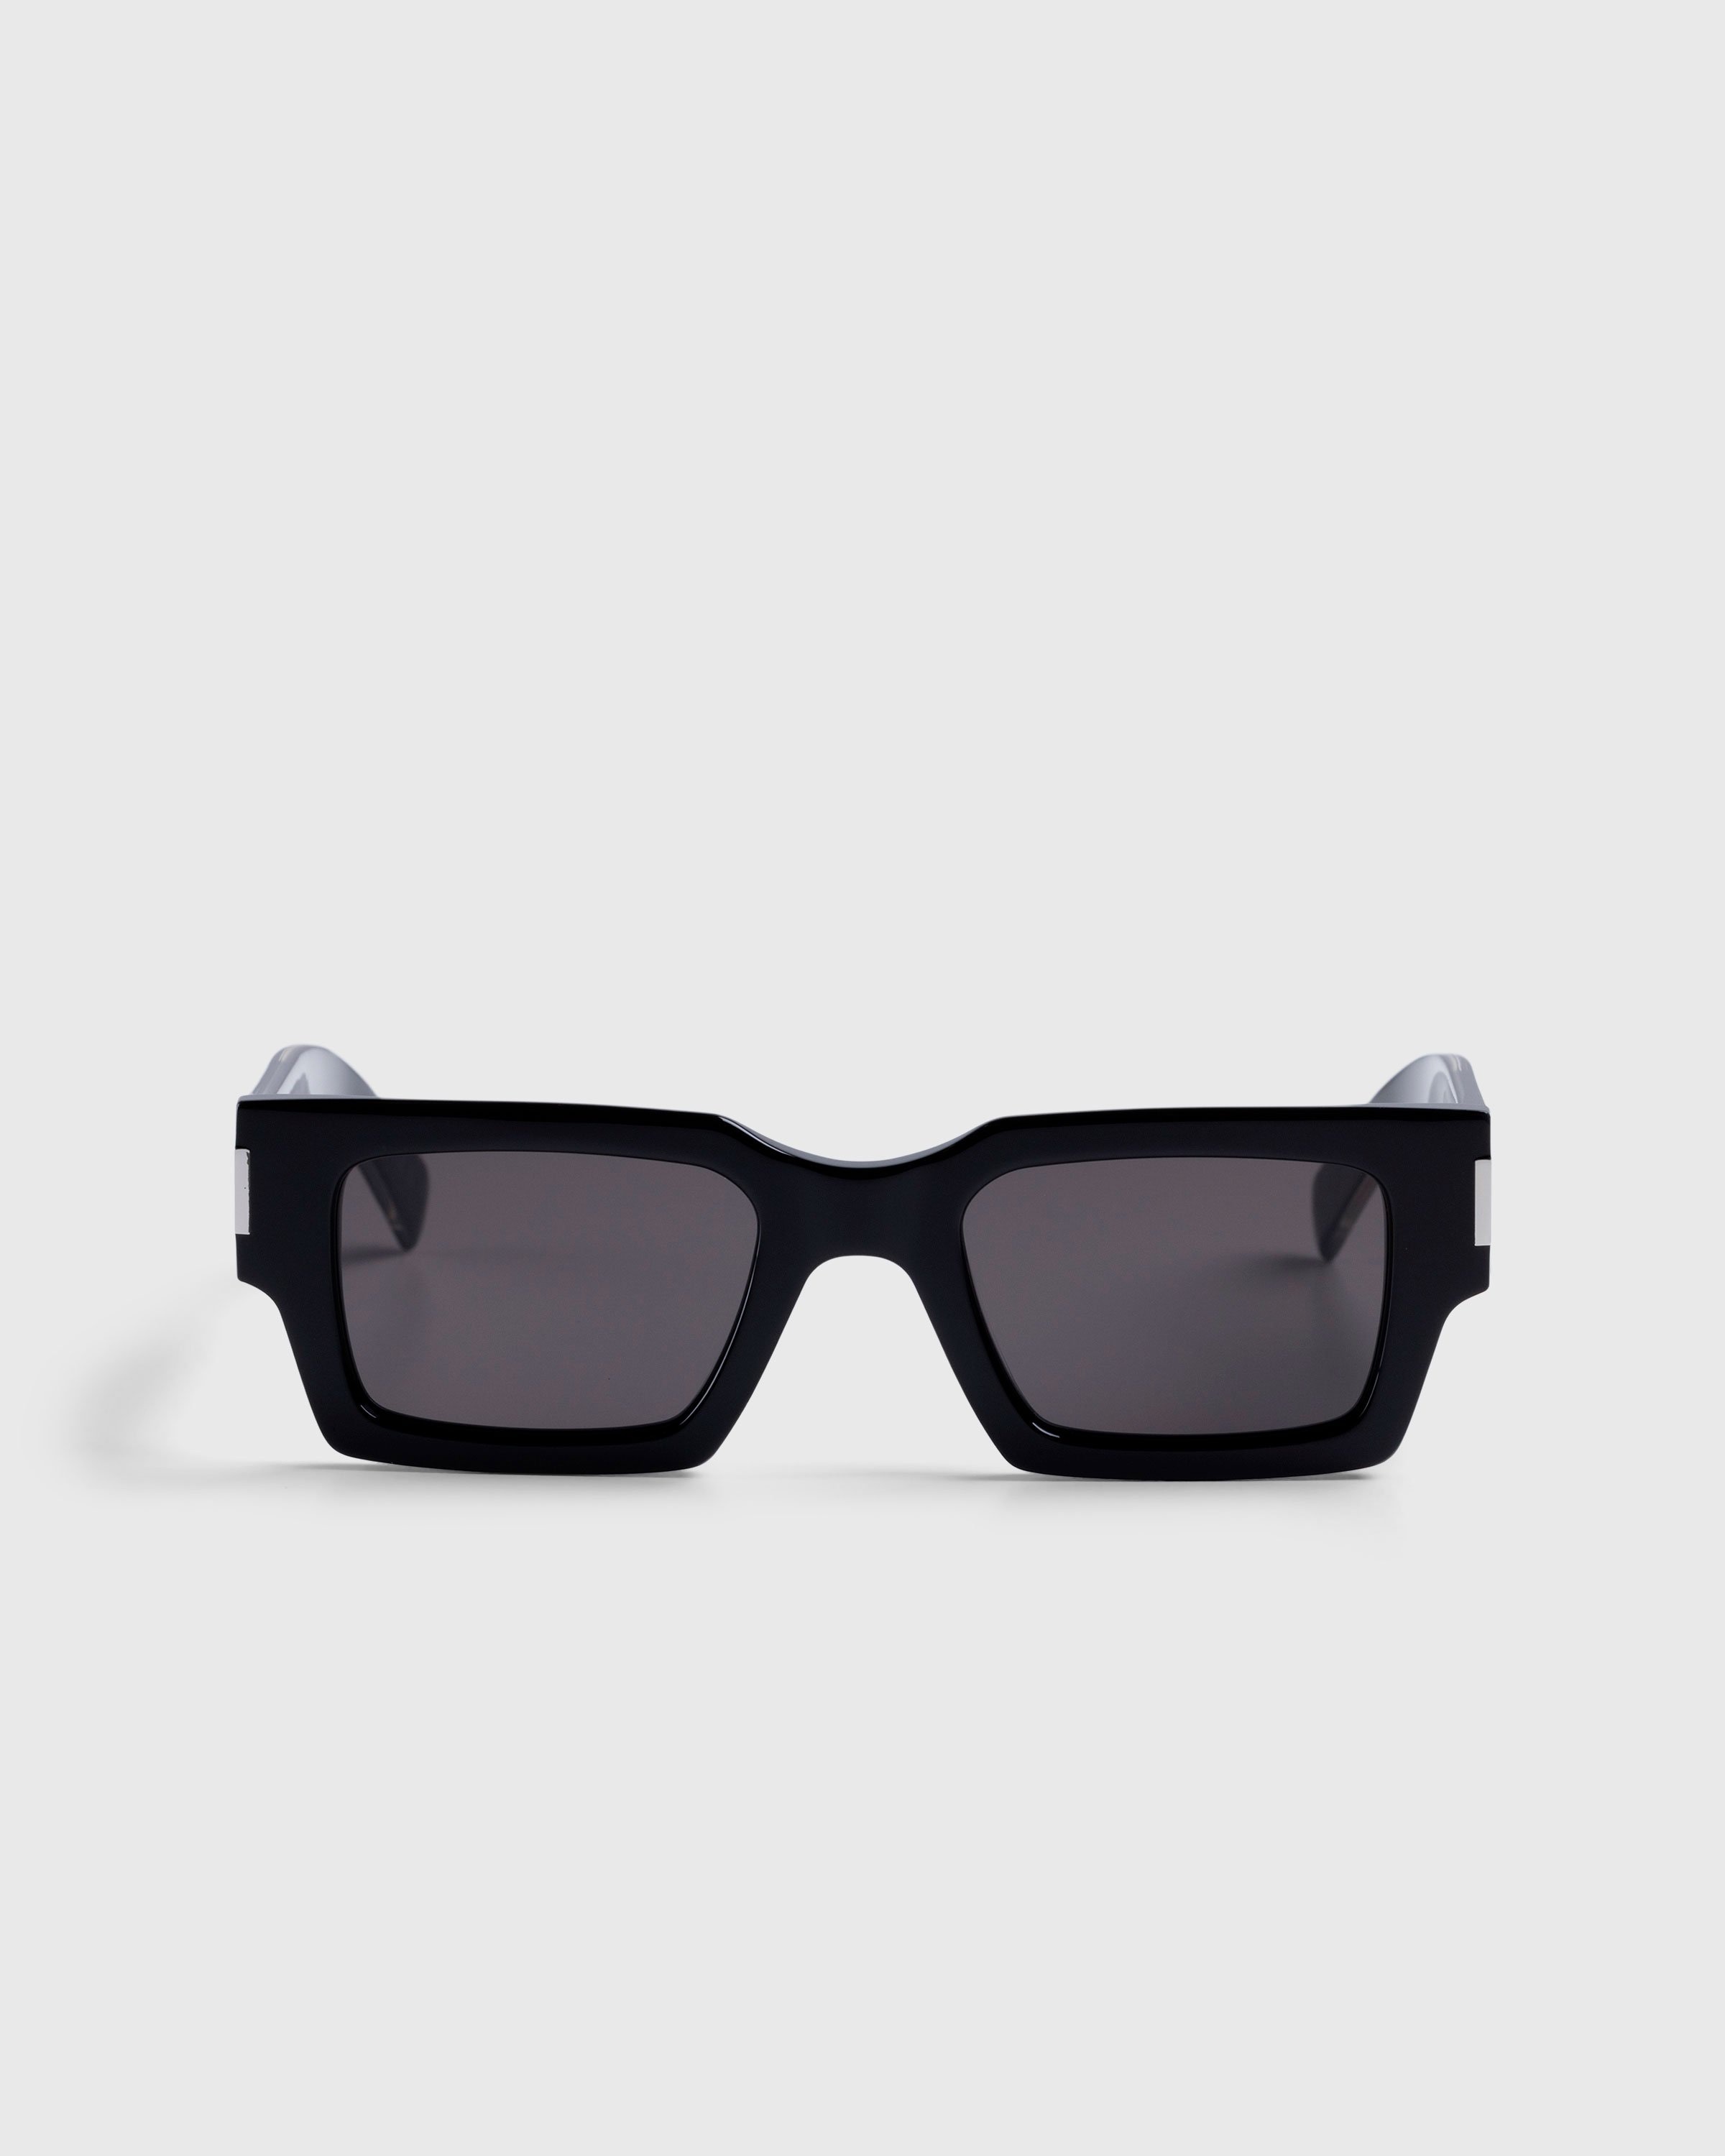 Saint Laurent – SL 572 Square Frame Sunglasses Black/Crystal - Sunglasses - Multi - Image 1